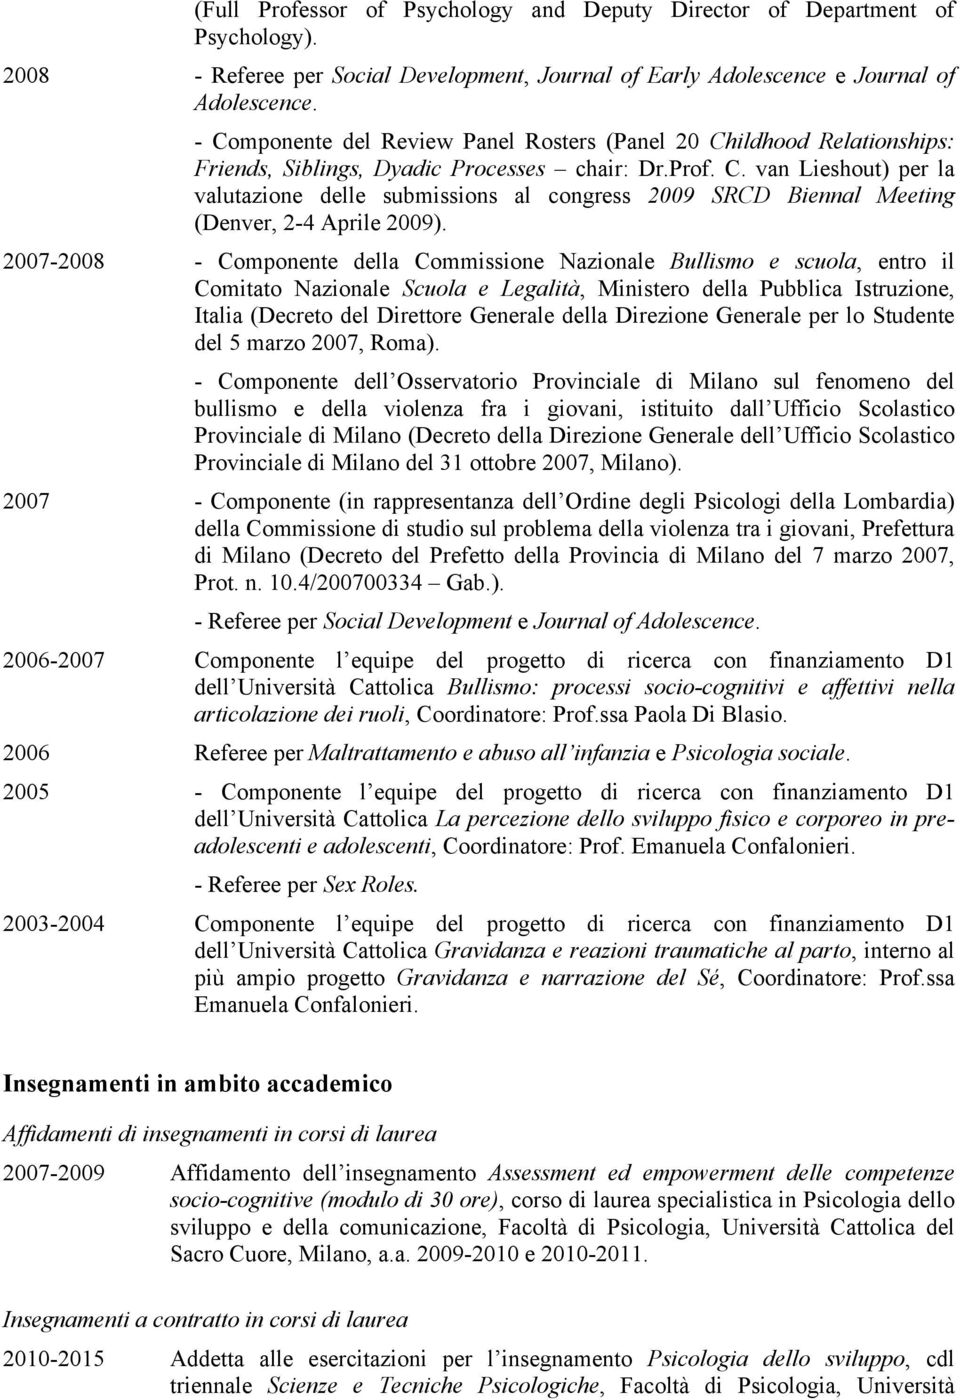 2007-2008 - Componente della Commissione Nazionale Bullismo e scuola, entro il Comitato Nazionale Scuola e Legalità, Ministero della Pubblica Istruzione, Italia (Decreto del Direttore Generale della